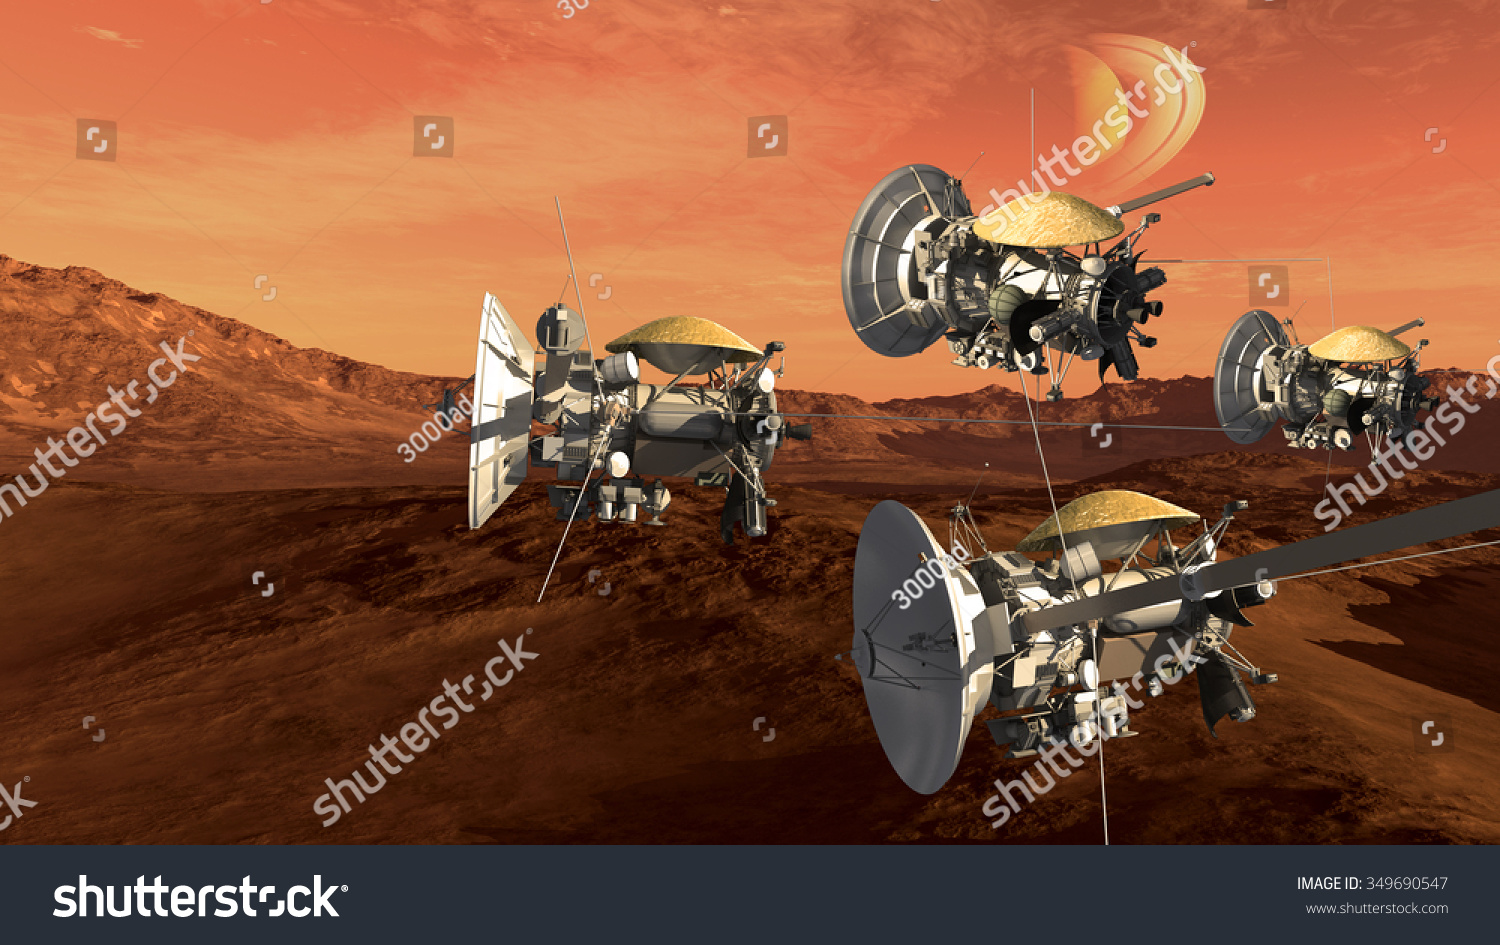 无人宇宙飞船探测侦察火星喜欢红色星球,太空